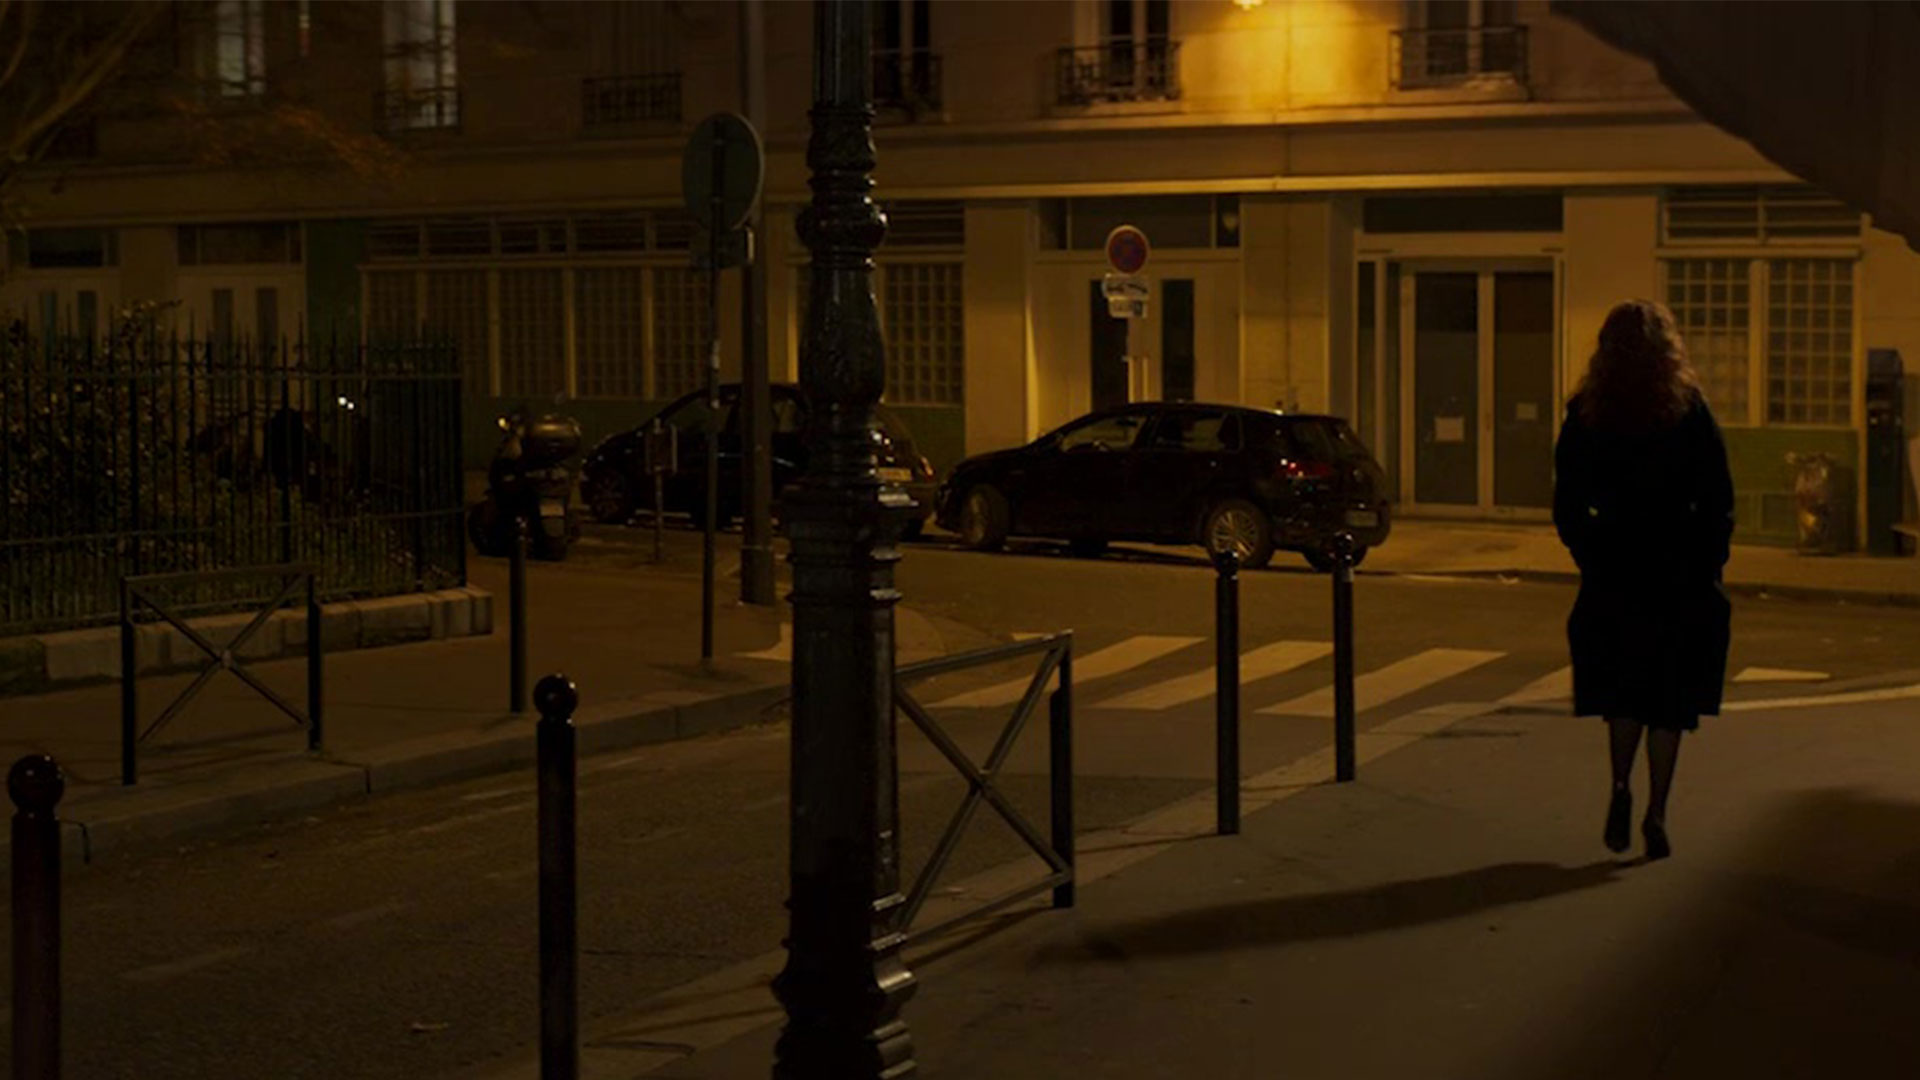 میشل فایفر بازیگر نقش فرانسیس در فیلم خروج فرانسوی